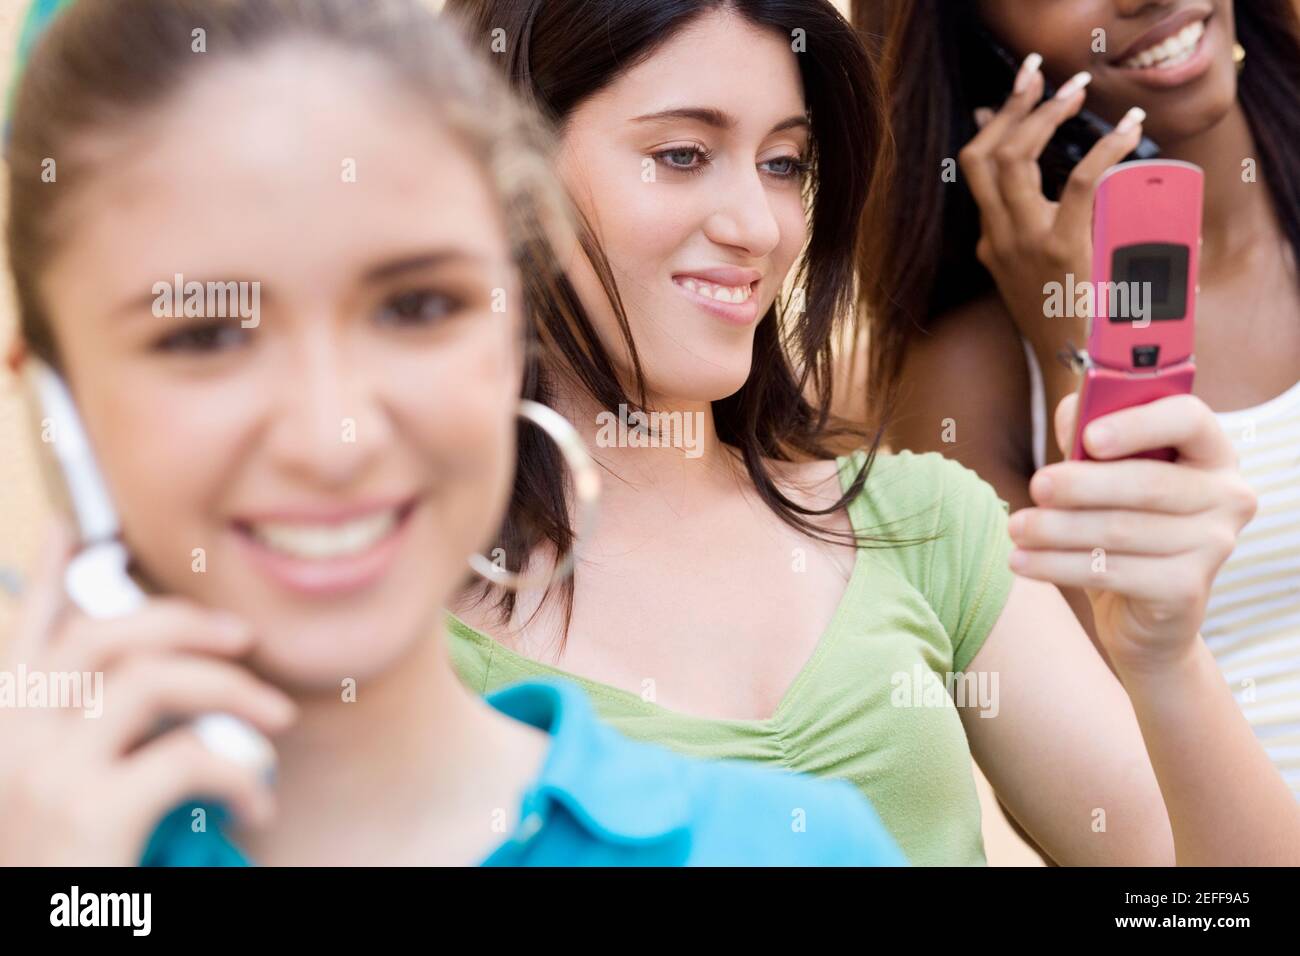 Adolescente regardant un téléphone portable avec deux autres les adolescentes parlent sur leur téléphone portable Banque D'Images